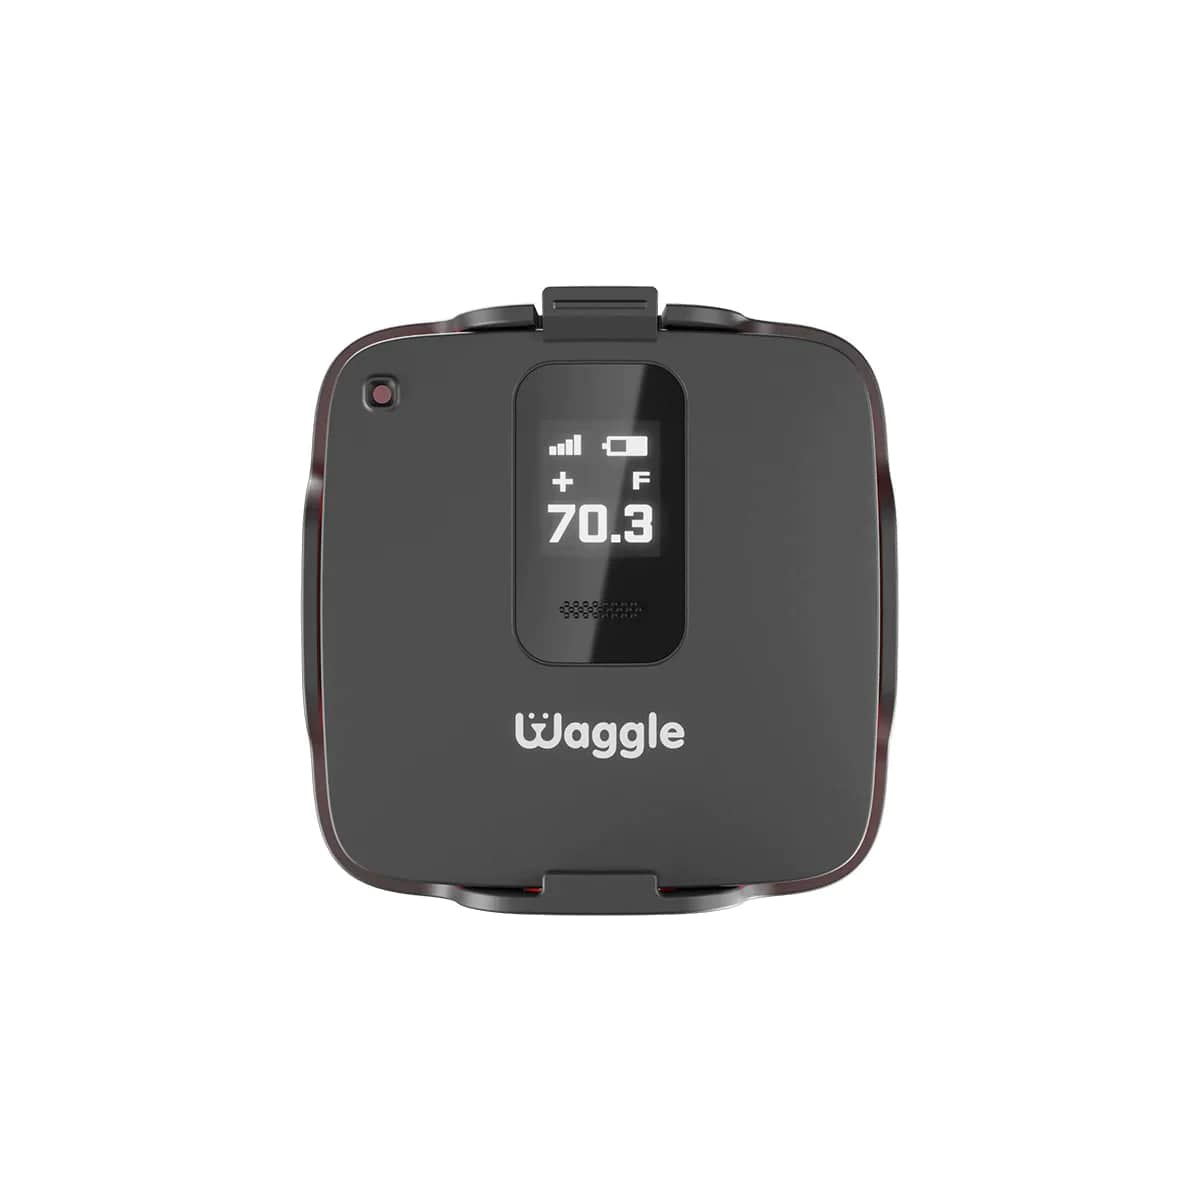 Waggle Pet Monitor 4G GPS RV Pet Safety Temperature and Humidity Monitor - Nib